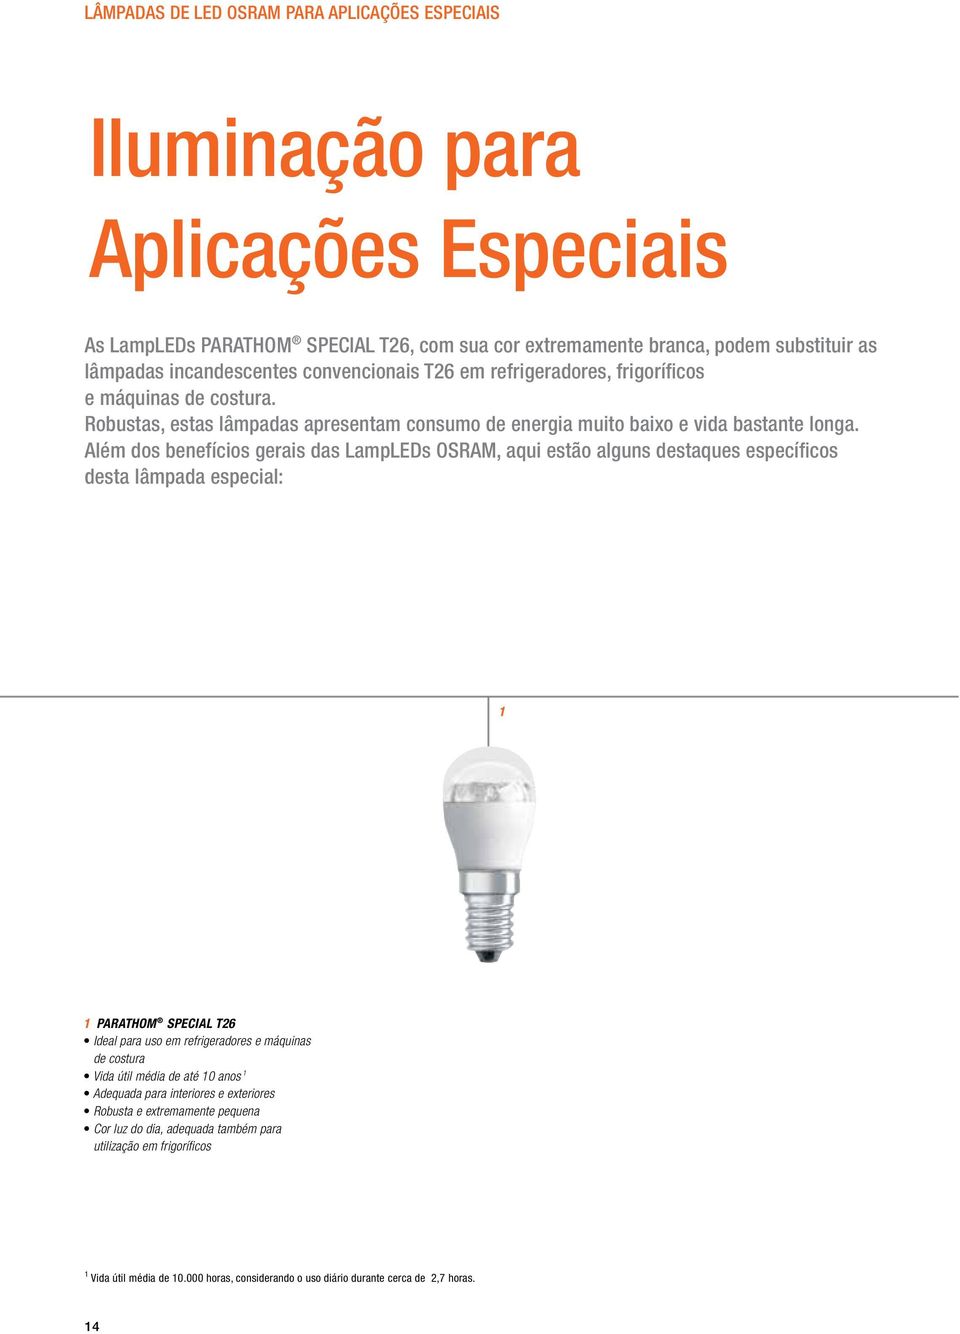 Além dos benefícios gerais das LampLEDs OSRAM, aqui estão alguns destaques específicos desta lâmpada especial: 1 1 PARATHOM SPECIAL T26 Ideal para uso em refrigeradores e máquinas de costura Vida